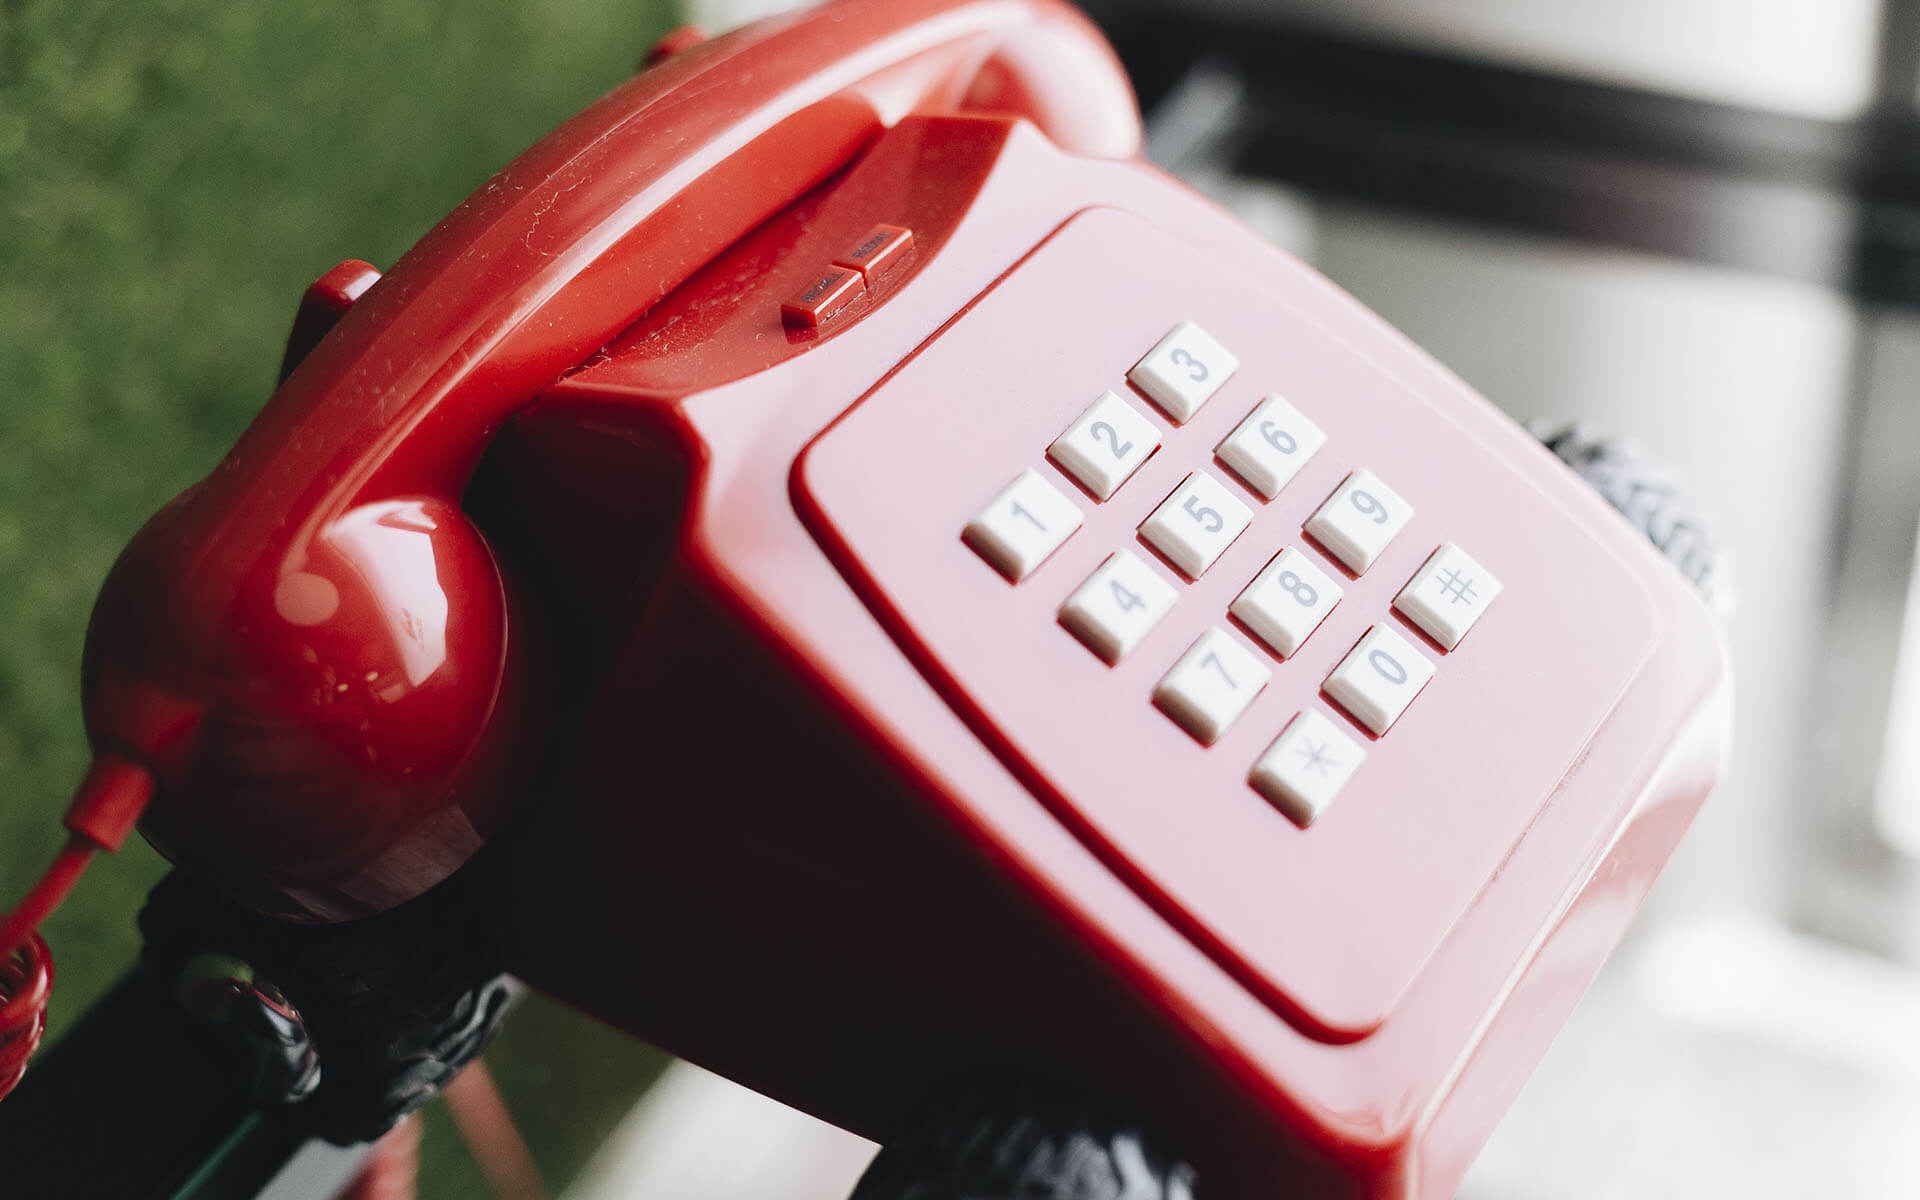 Este es nuestro icónico teléfono rojo que tanto nos caracteriza